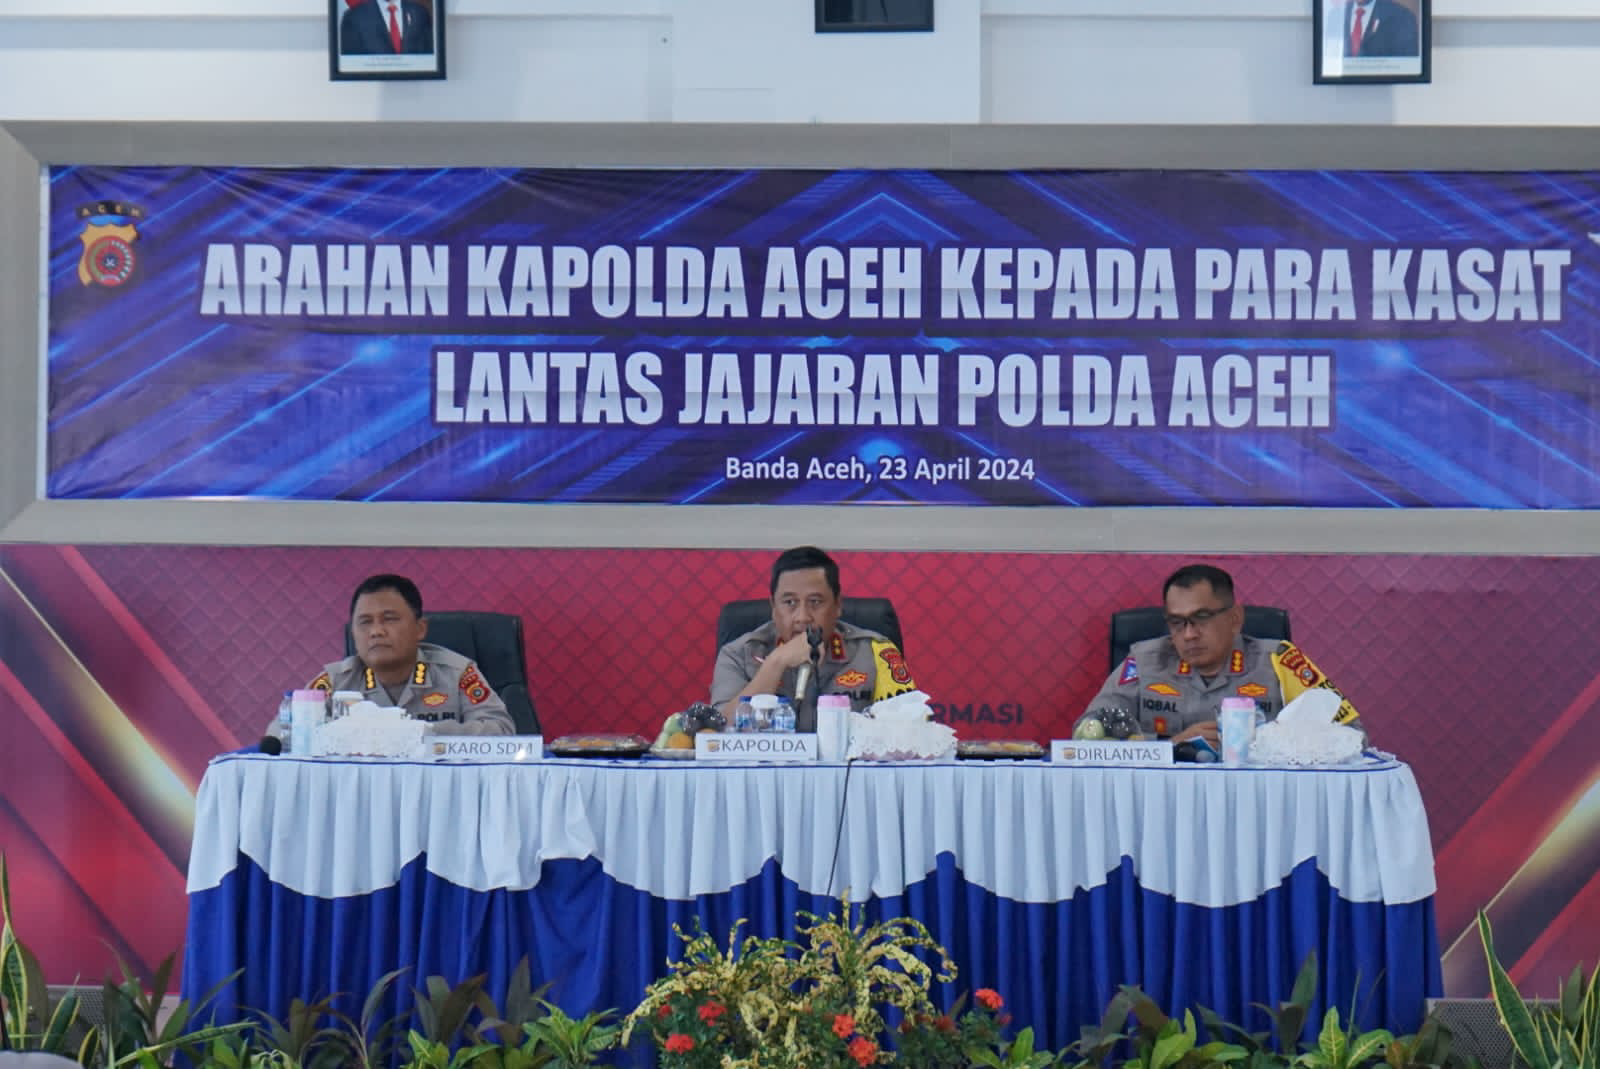 Kapolda Aceh Apresiasi Upaya Ditlantas dan Jajaran dalam Meminimalisir Angka Laka Lantas